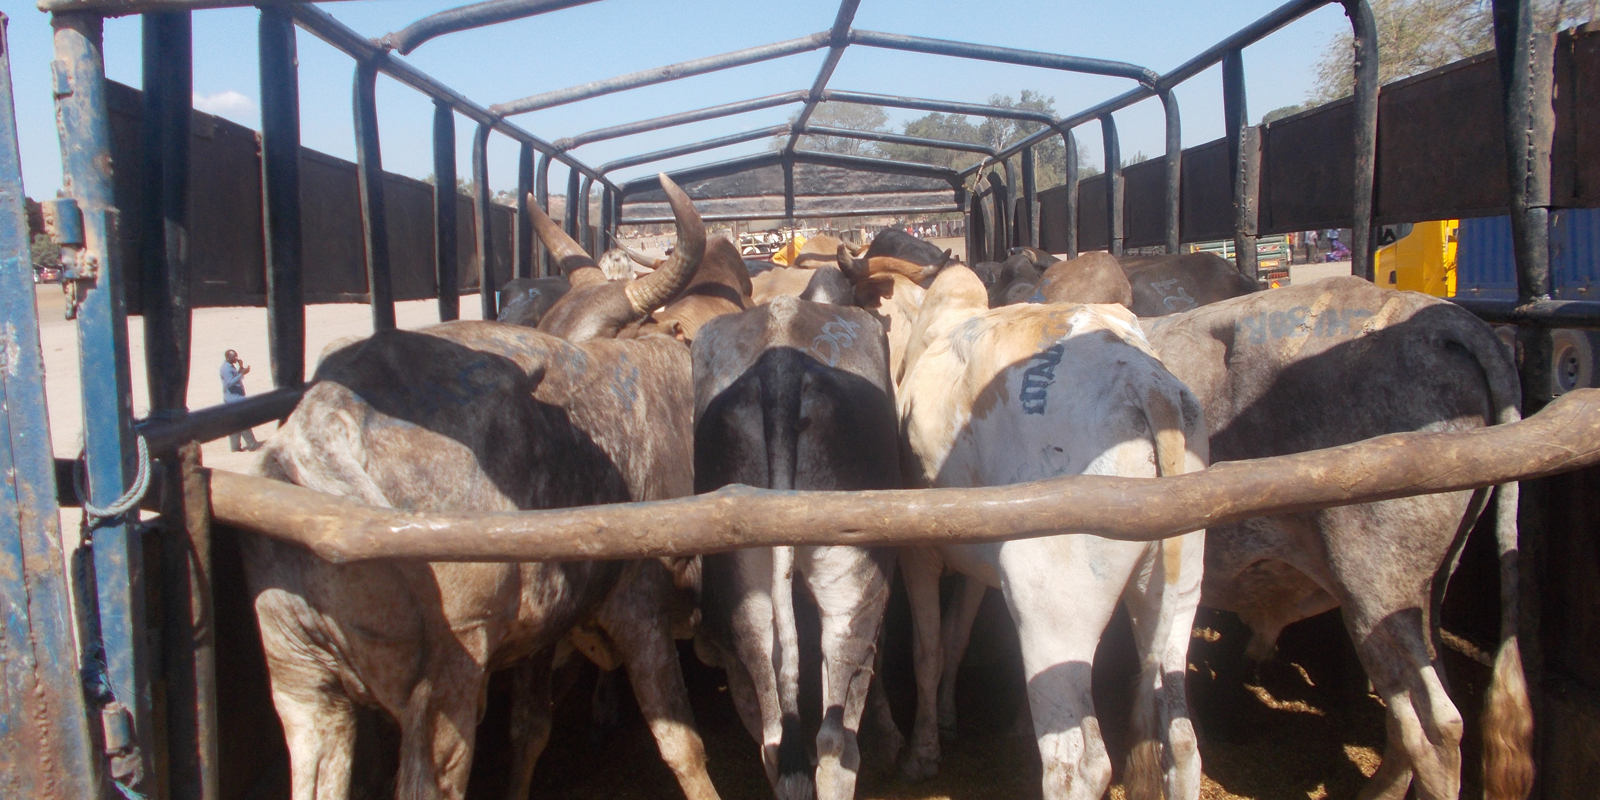 Livestock markets in Tanzania